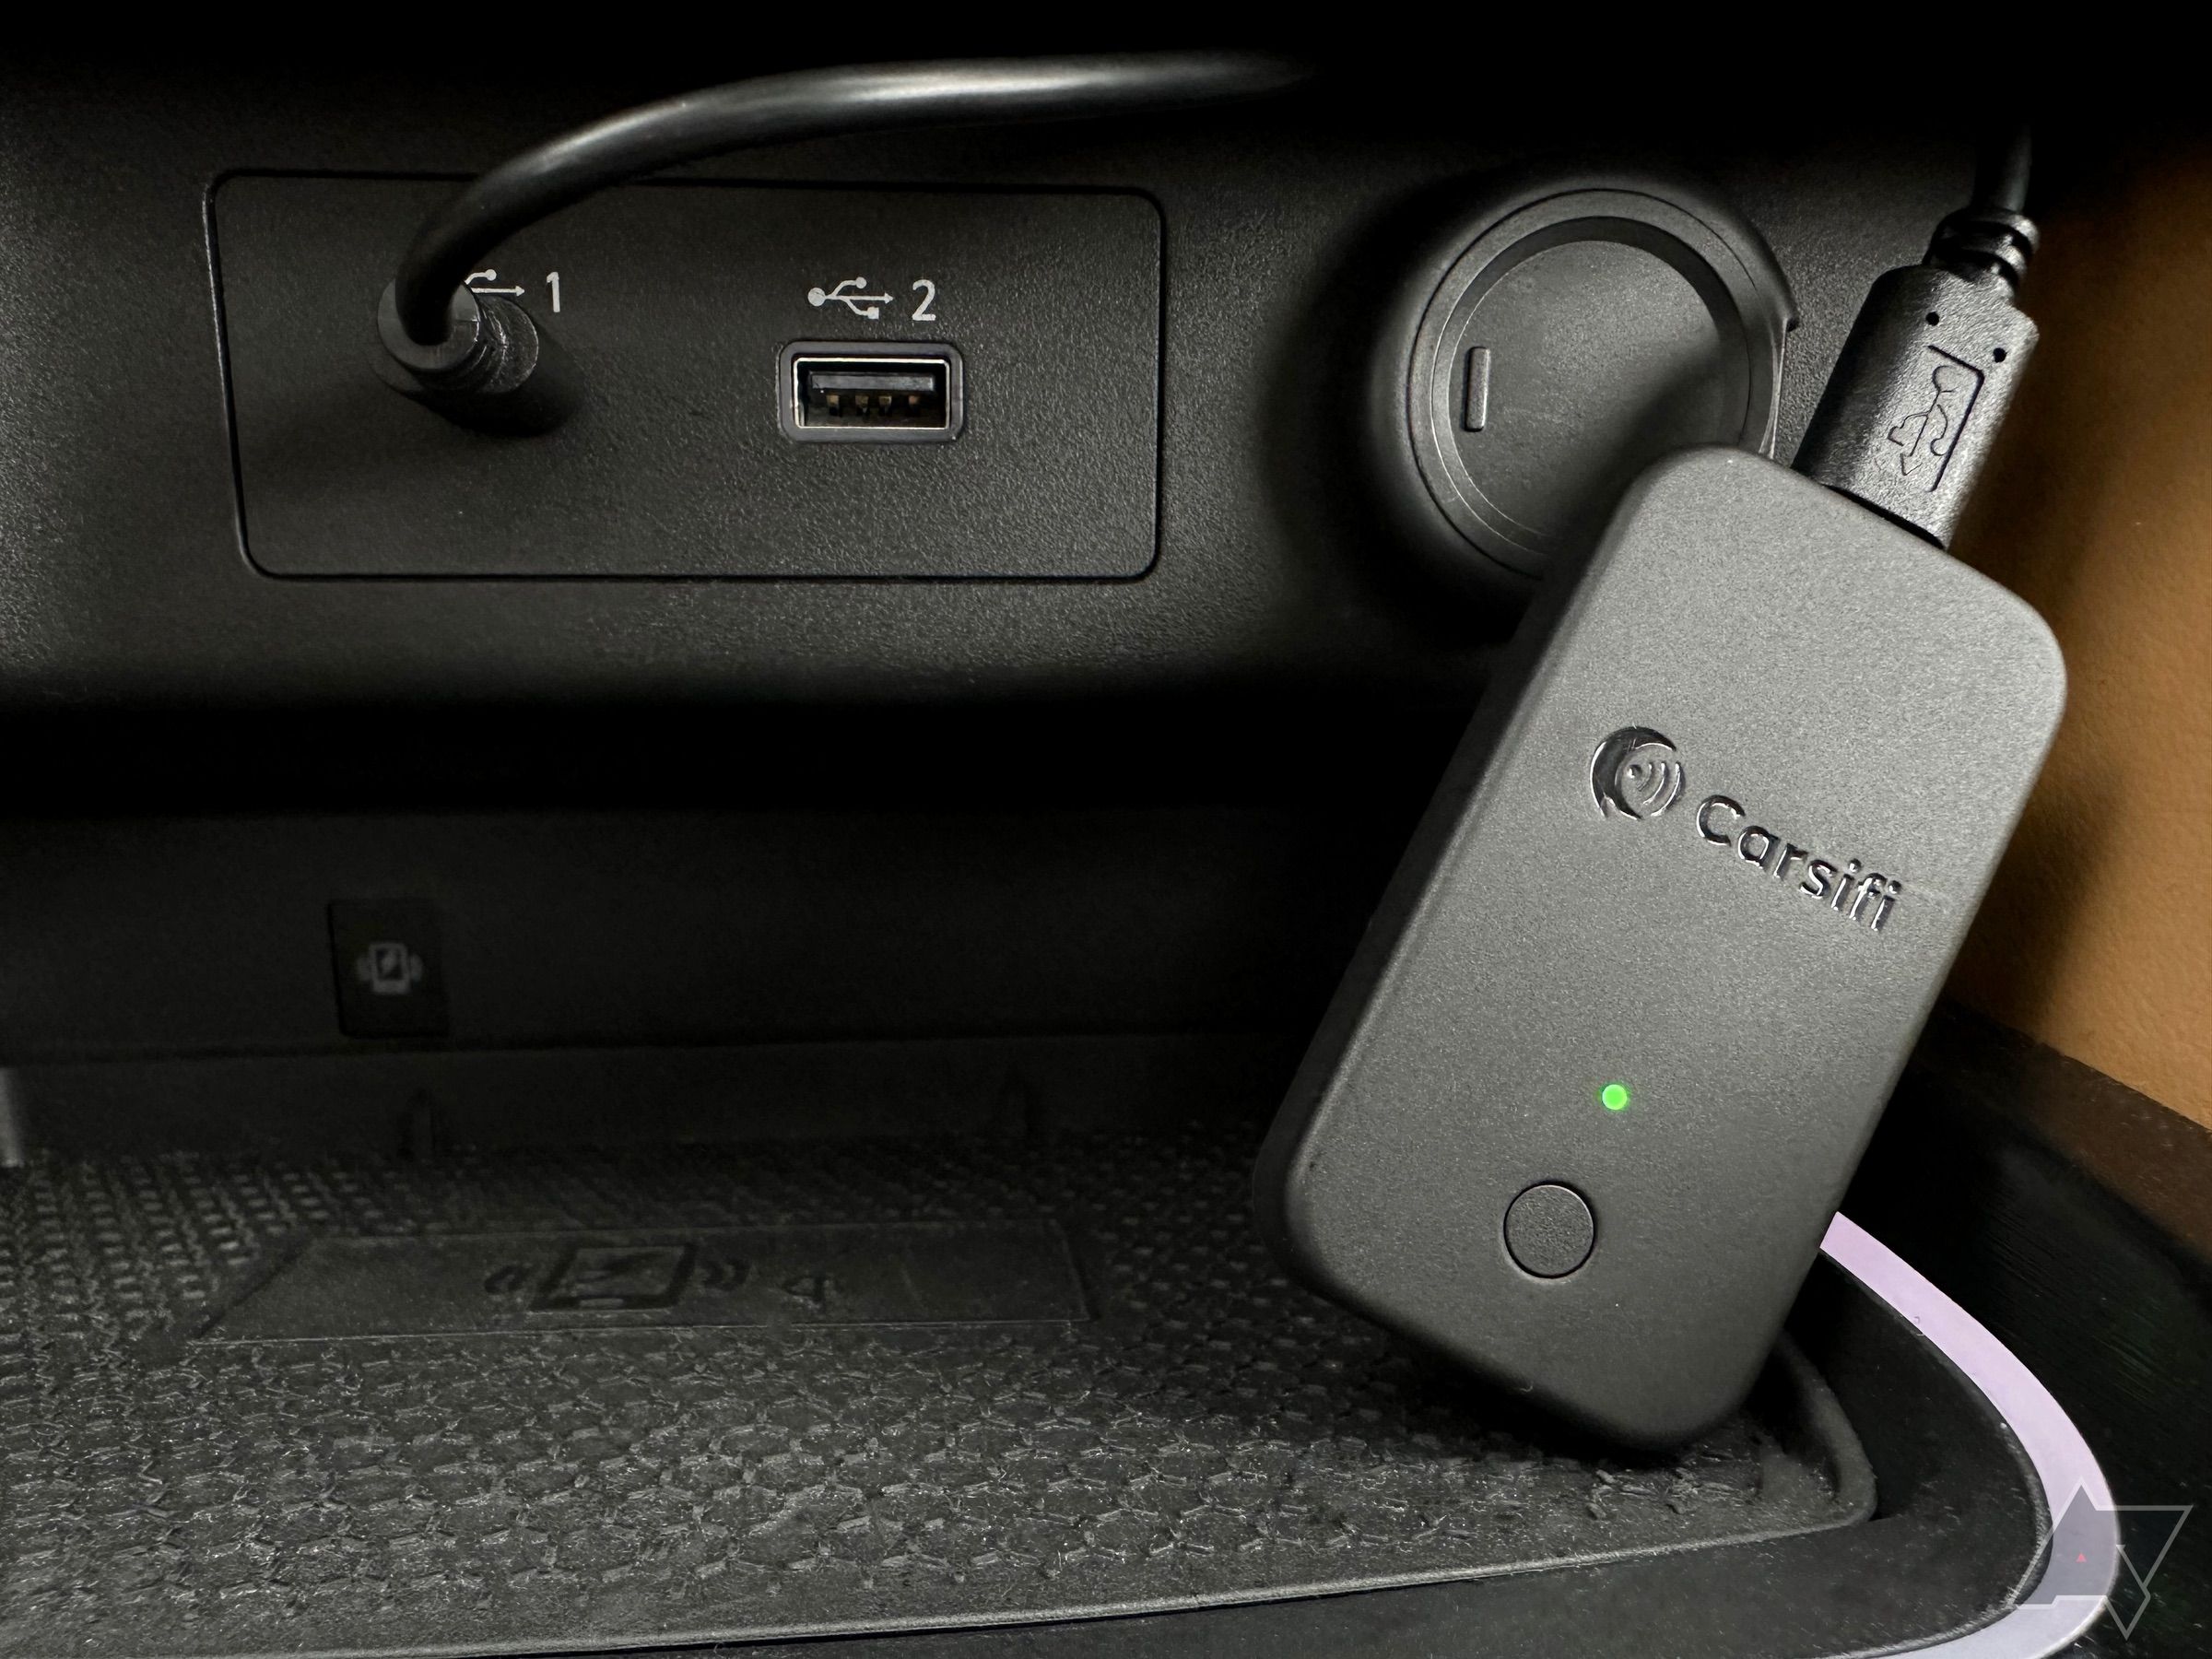 Adaptador Carsifi Wireless Android Auto conectado e apoiado no console do carro.